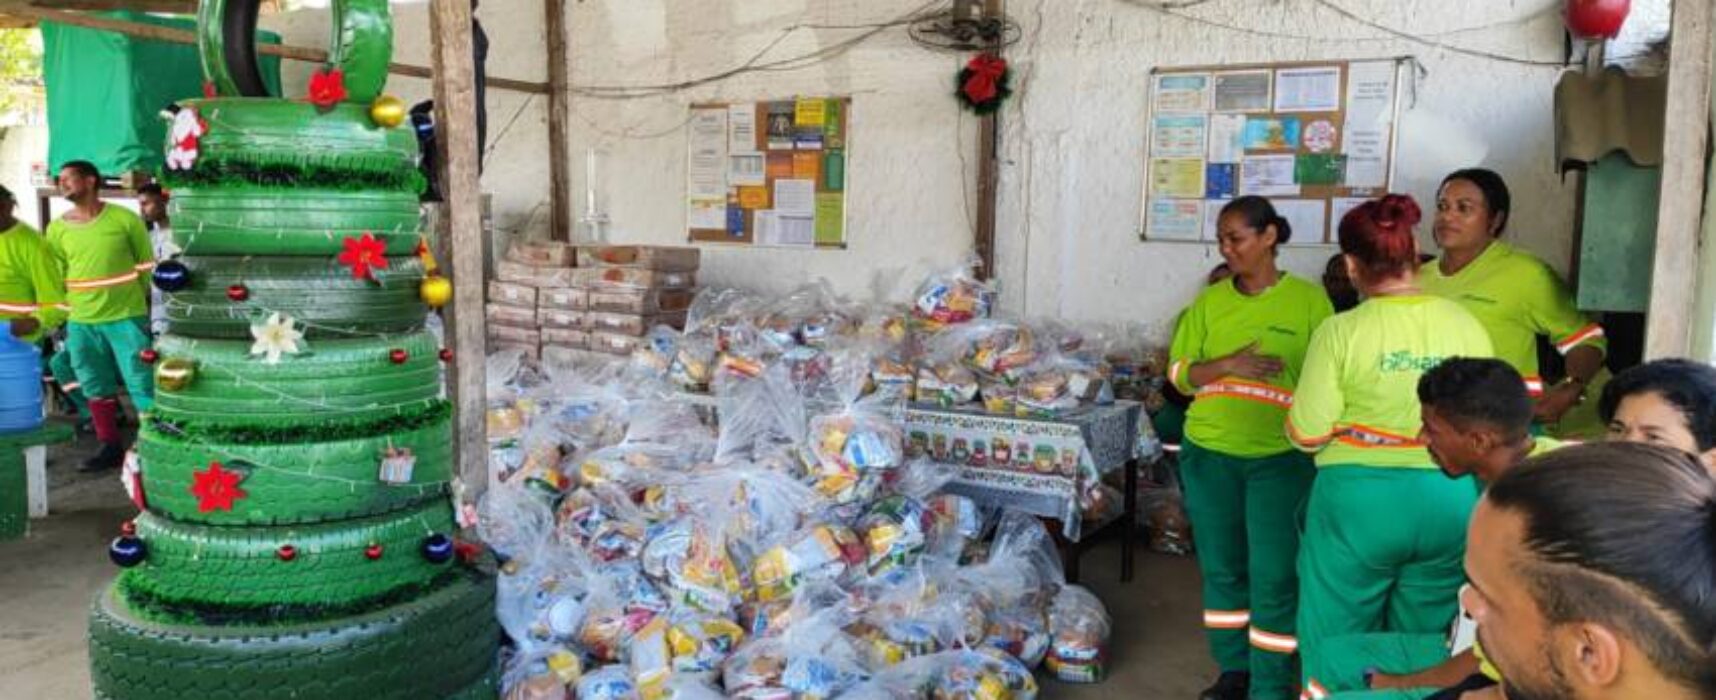 Prefeitura garantiu 10 mil cestas natalinas para famílias carentes de Itabuna